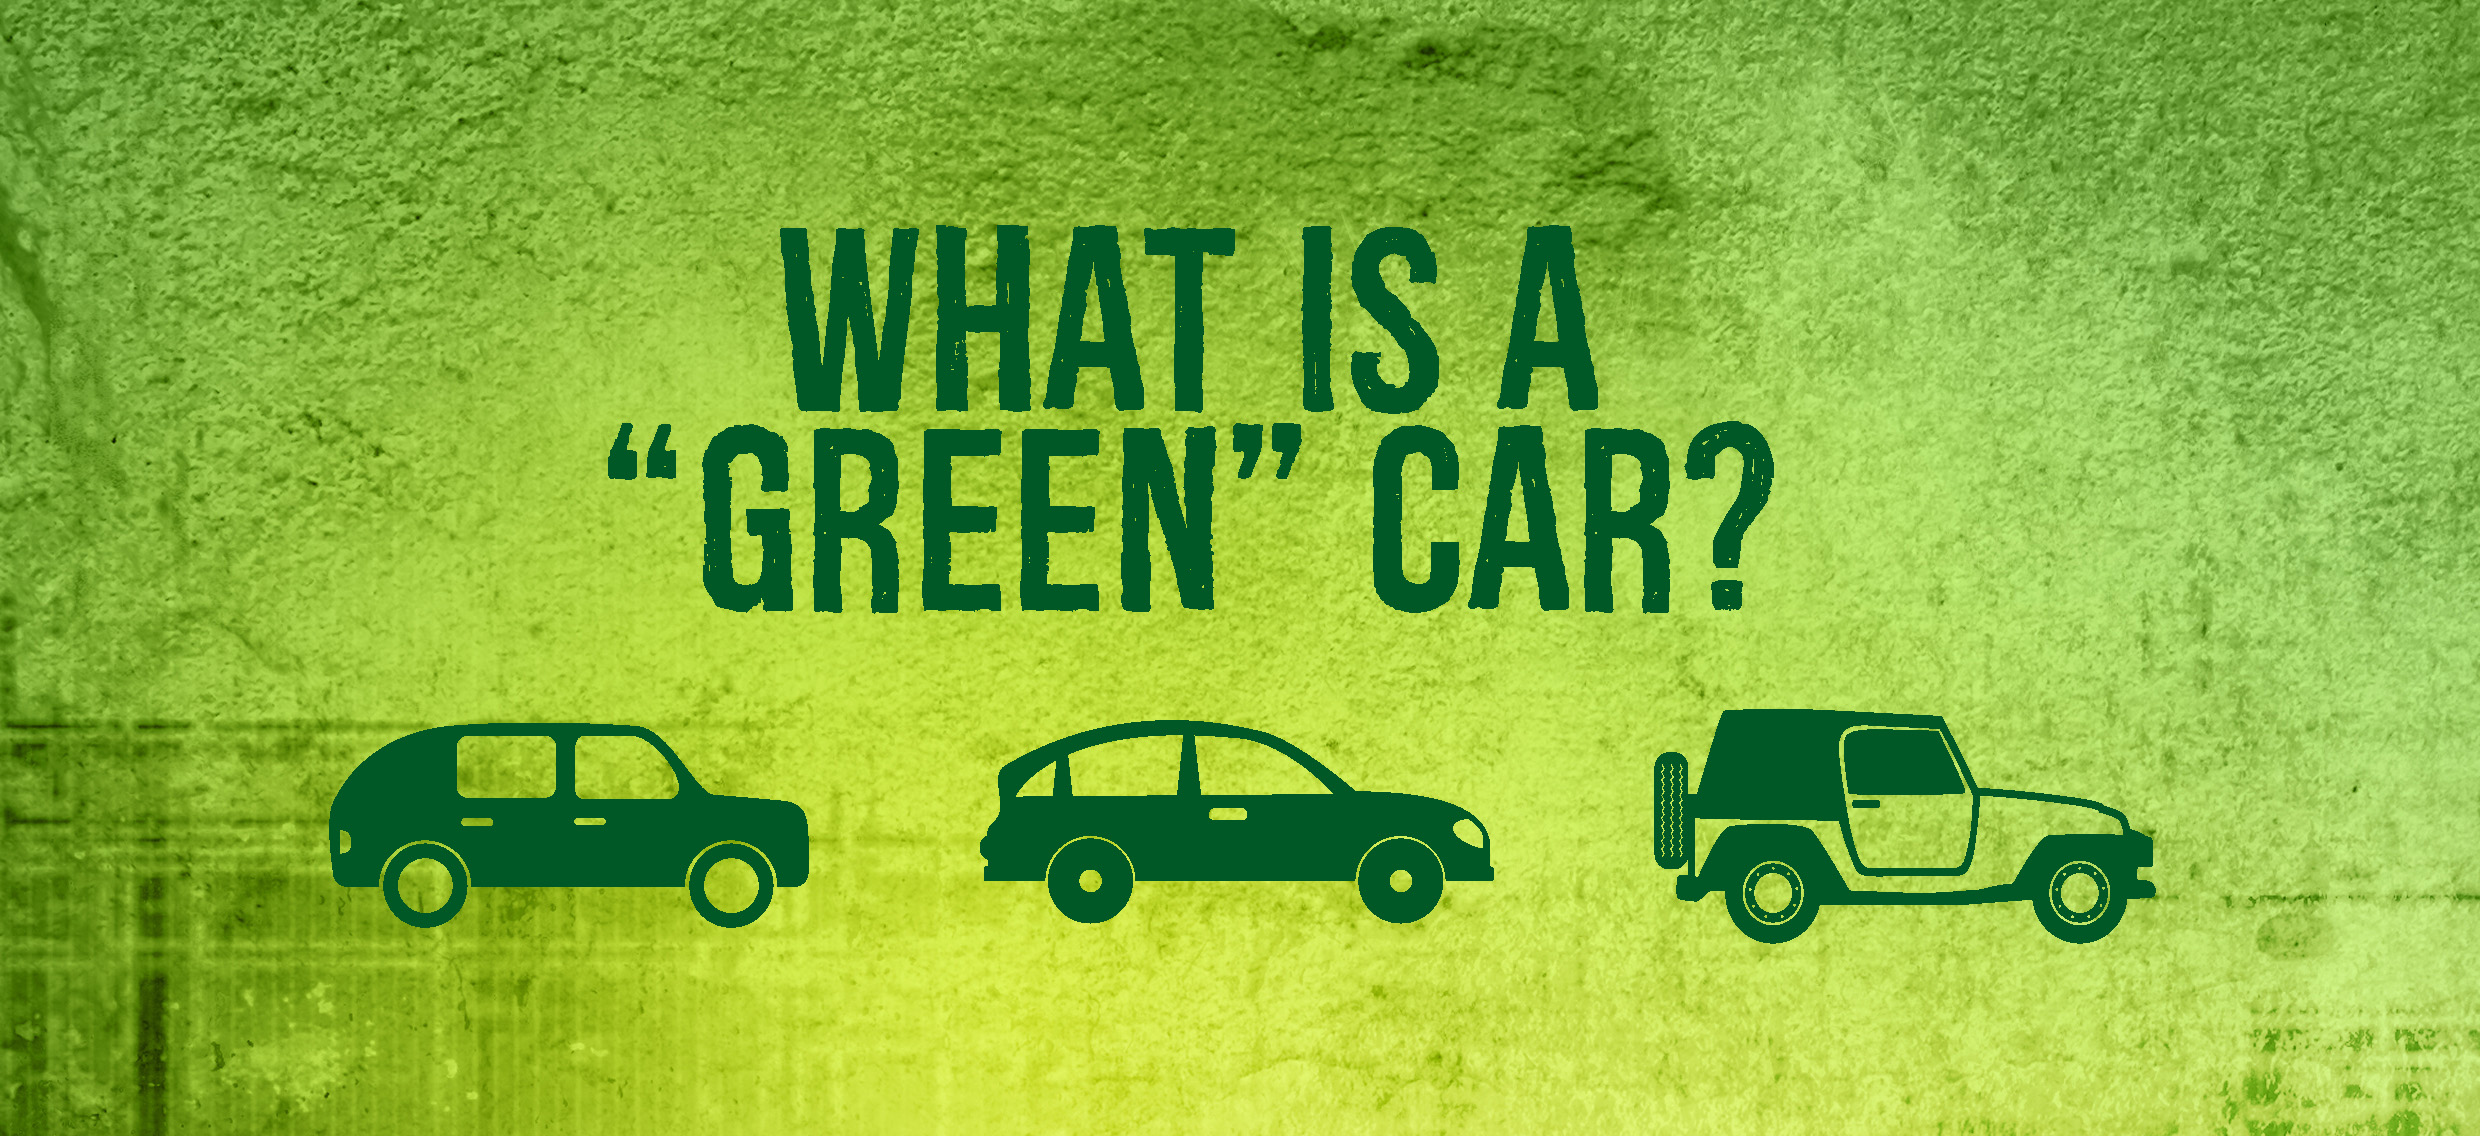 Green Car or Fuel Efficient Car? 